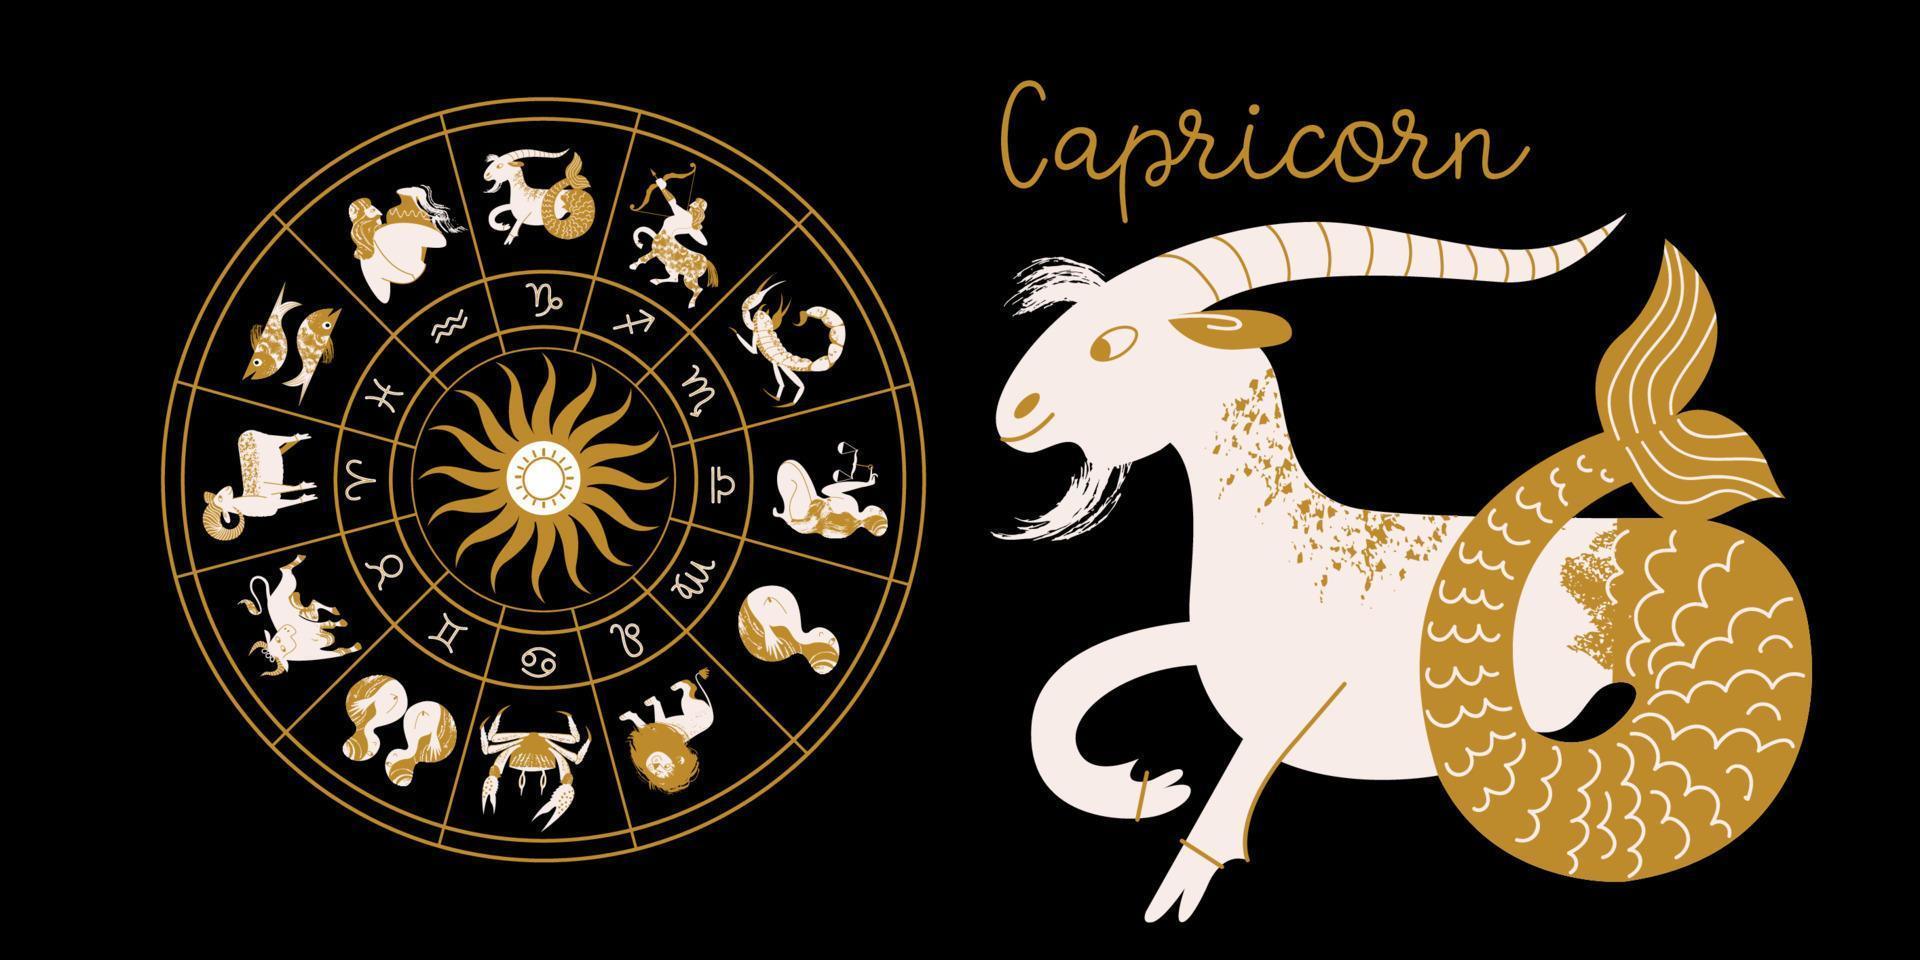 Sternzeichen Steinbock. Horoskop und Astrologie. volles Horoskop im Kreis. Horoskop-Rad-Tierkreis mit zwölf Zeichen Vektor. vektor